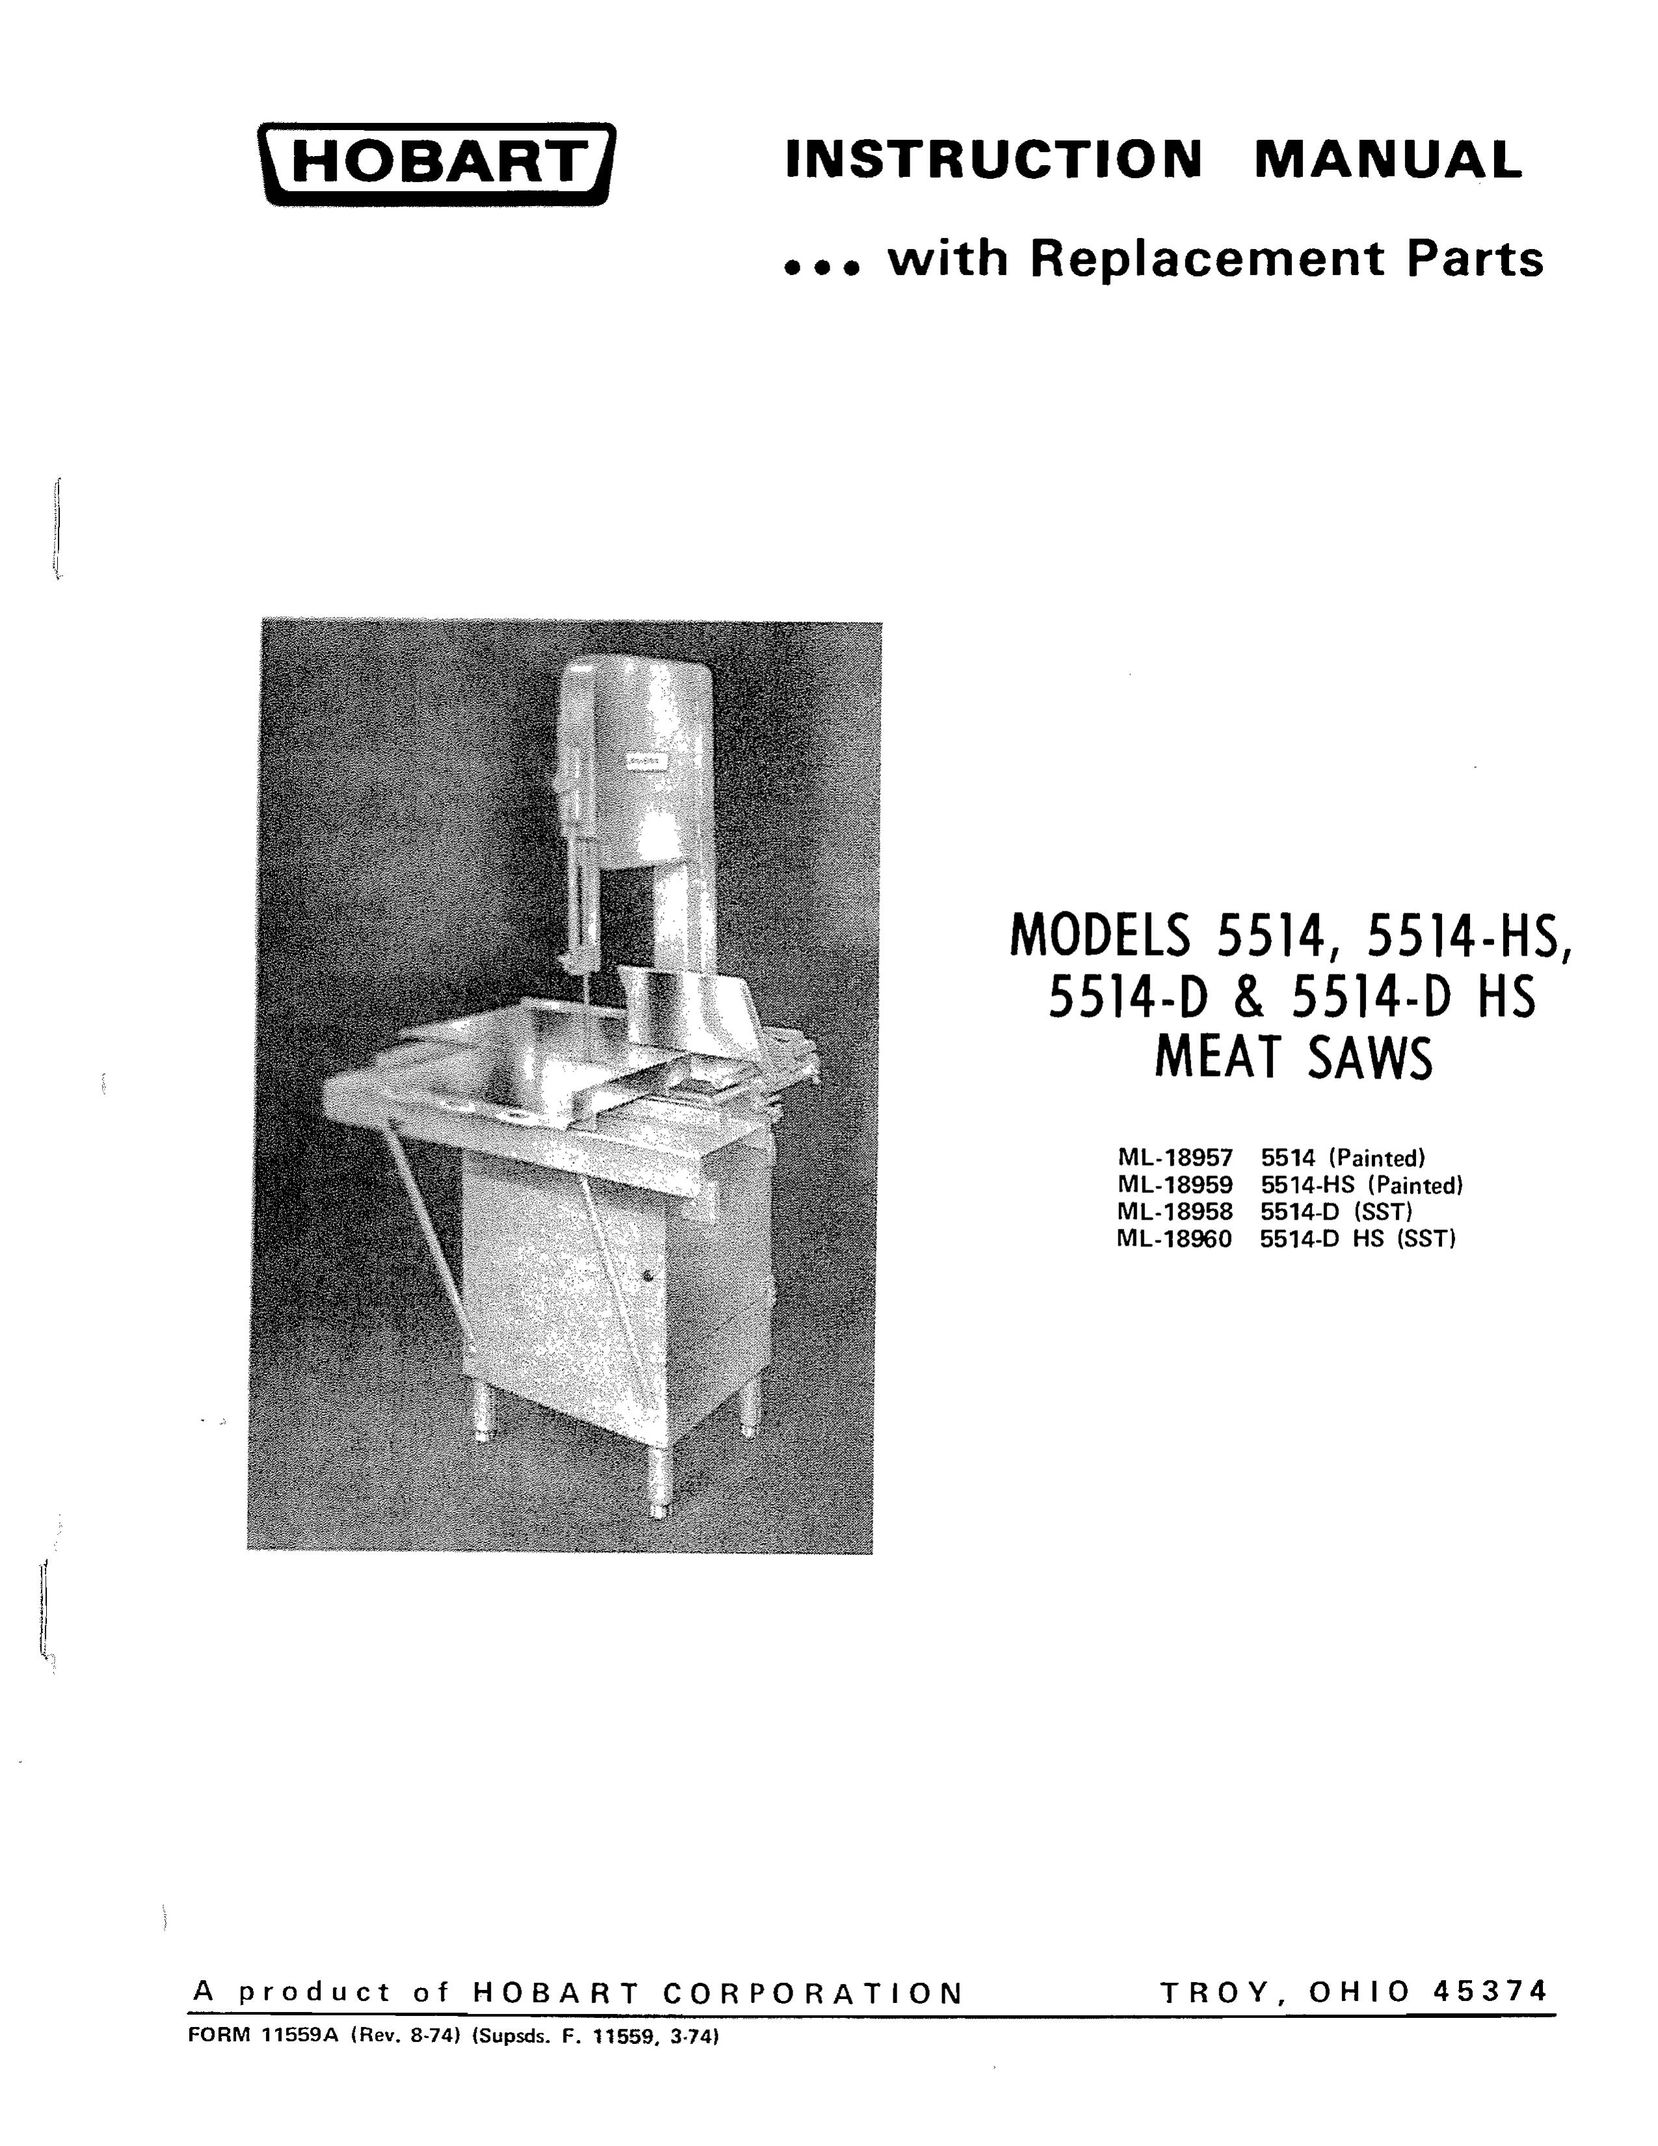 Hobart 5514-D Plumbing Product User Manual